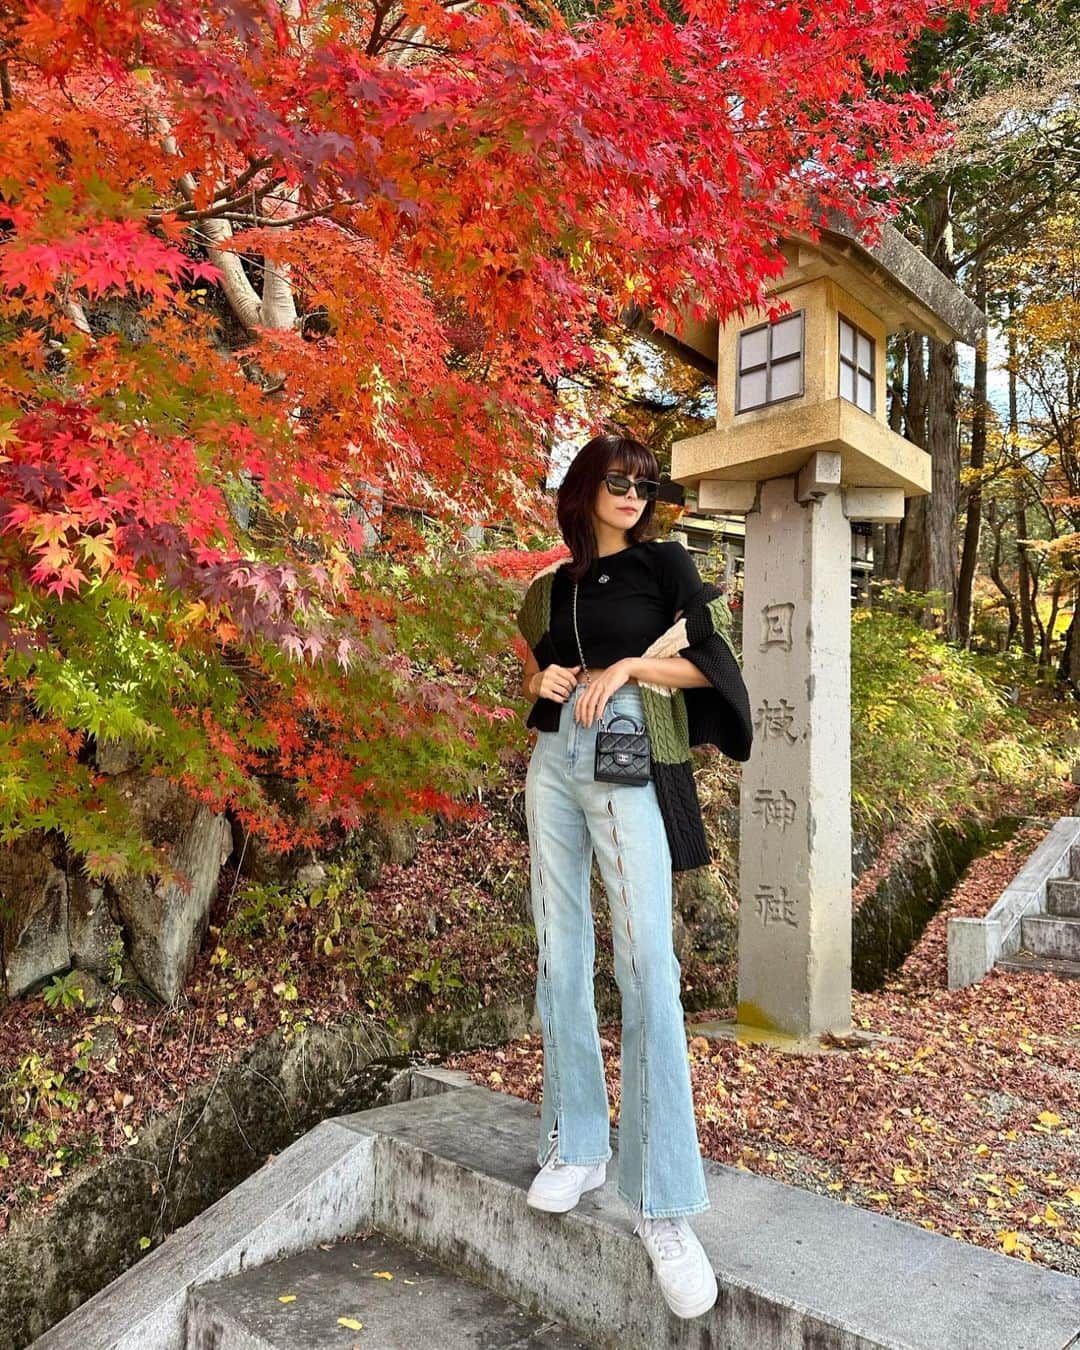 ききまるのインスタグラム：「紅葉🍁 . 飛騨高山にある日枝神社。 . 紅葉始まりでキレイでうっとりした🥹🍁 (📝11/9 ) . 今年初めてちゃんと秋を感じたわ🍂 . とっても静かで風の音、水の音、葉っぱの音 ぜーんぶ聴こえて癒された  . .  . . sunglasses : @gentlemonster  tops : @royalparty_official  knit : @murua_official  denim : @evris_official  sneaker : @niketokyo  bag : @chanelofficial  . . .  . -—————————  ききまる♡自己紹介  💠インスタ歴10年現在フォロワー45万人 💠猫と犬と東京のど真ん中で暮らす26歳 💠事務所無所属(フリーランス) 💠TikTok & Twitter & Therdsも ㊙️ファンサイト開設しました❤️‍🔥 ハイライトの『裏垢』からチェックしてね . フォロー、保存、コメント嬉しいです✨       (((( 　@kikigram_97 ))))   ——————————  . #岐阜旅行　#岐阜観光　#飛騨高山　#飛騨高山旅行 #飛騨高山紅葉 #紅葉　#紅葉狩り #紅葉スポット #紅葉シーズン #紅葉🍁 #gifu #giftrip #gifujapan #hidatakayama #hidatakayamamemories #takayama #hieshrine  #japantravel #japantrip #japanlife #japanphoto #japanstyle #japanphotography #japantravelphoto #japannature」